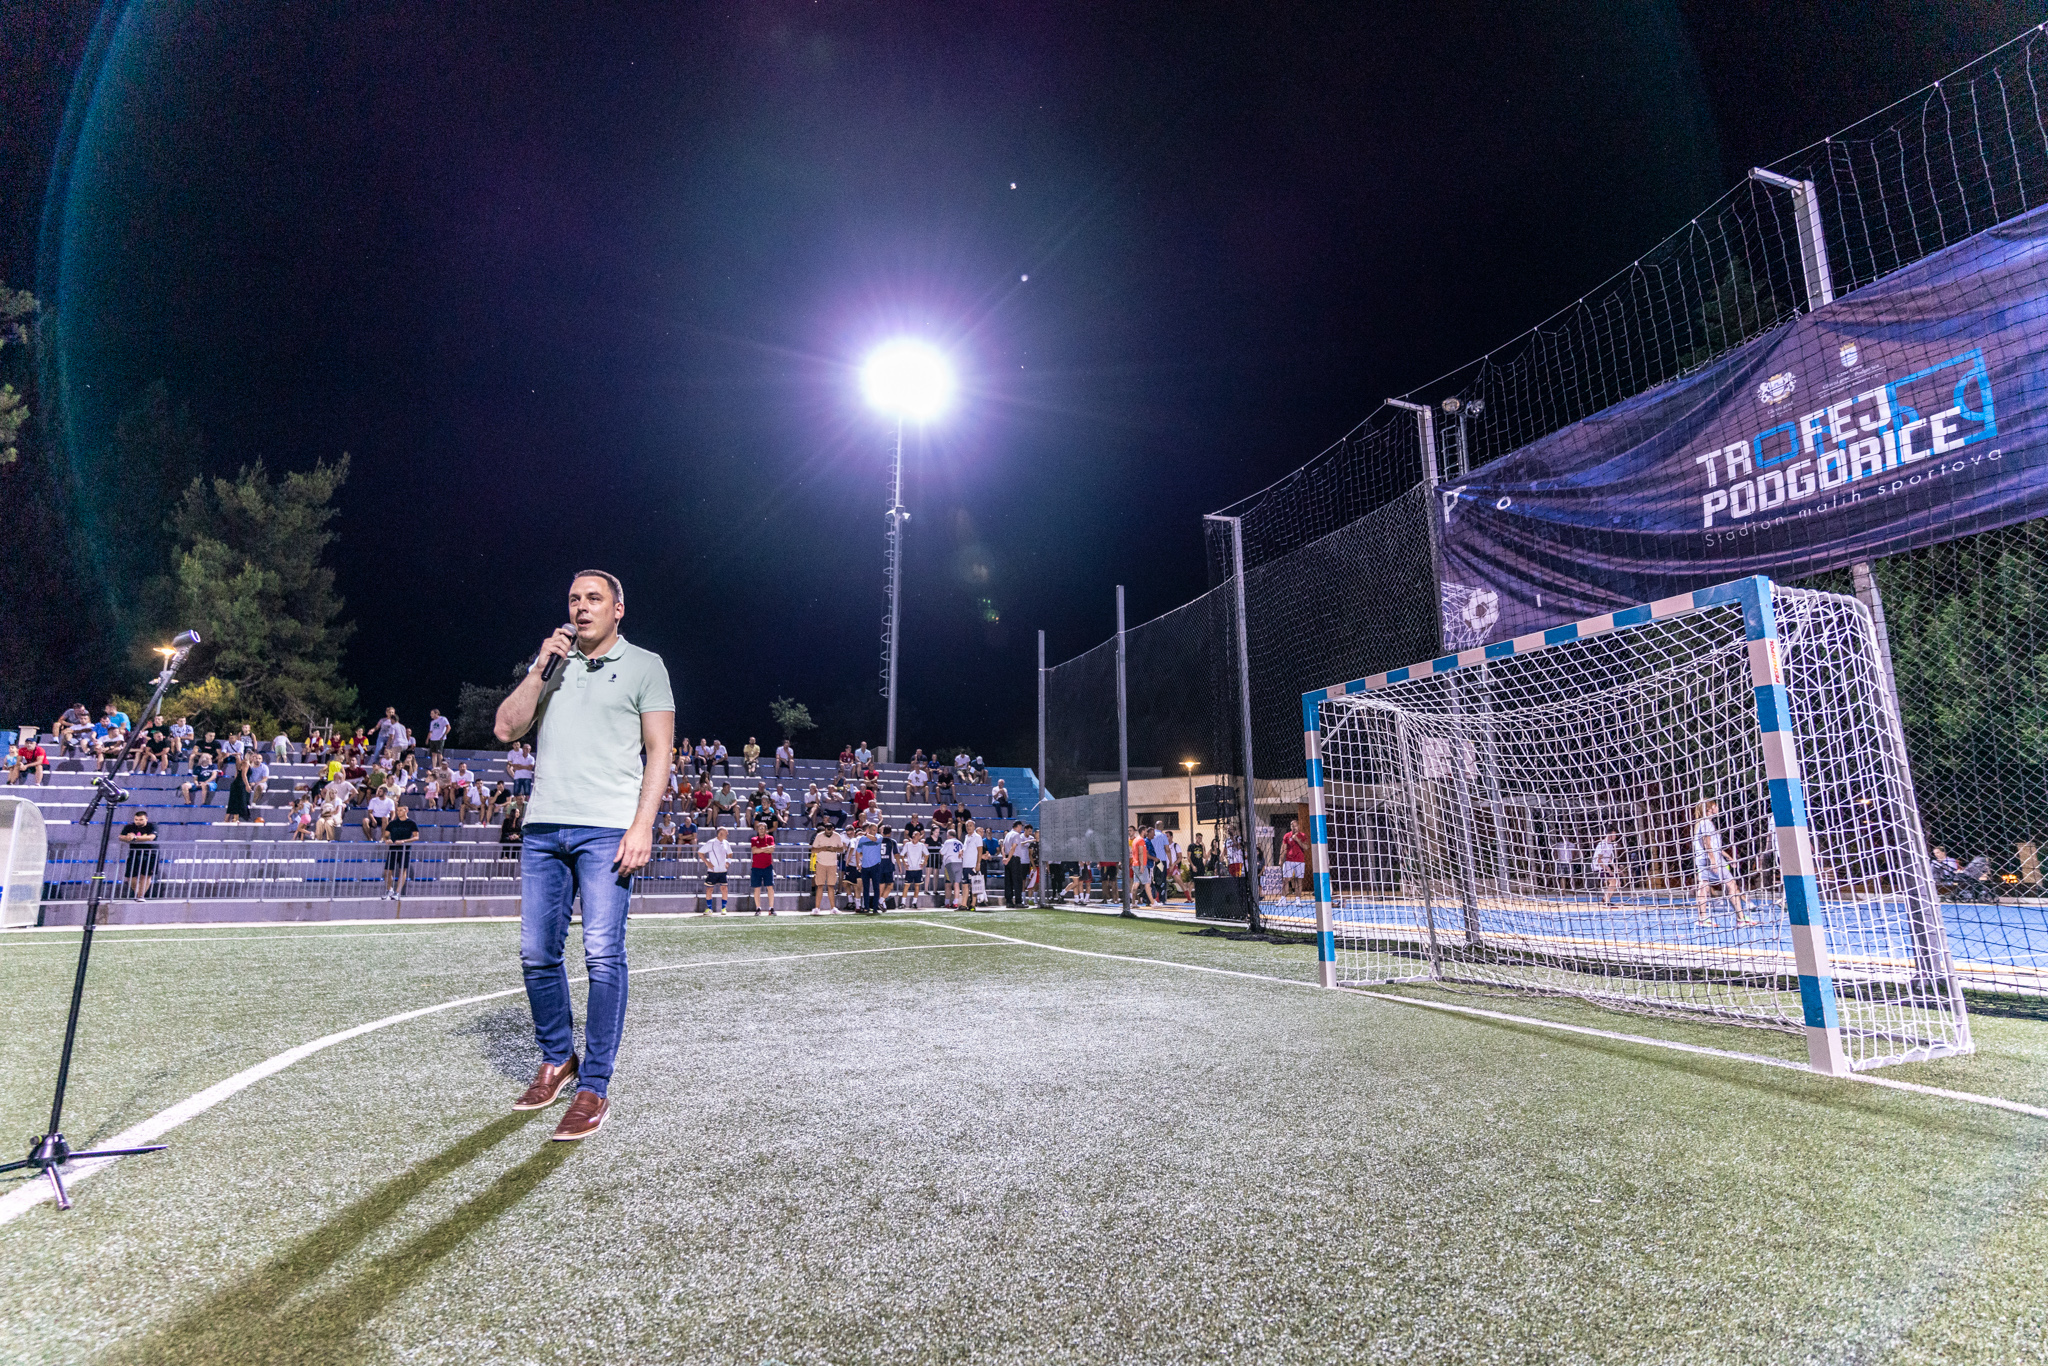 Glavni grad oživio staru tradiciju; Na Stadionu malih sportova se ponovo igra najbolji fudbal